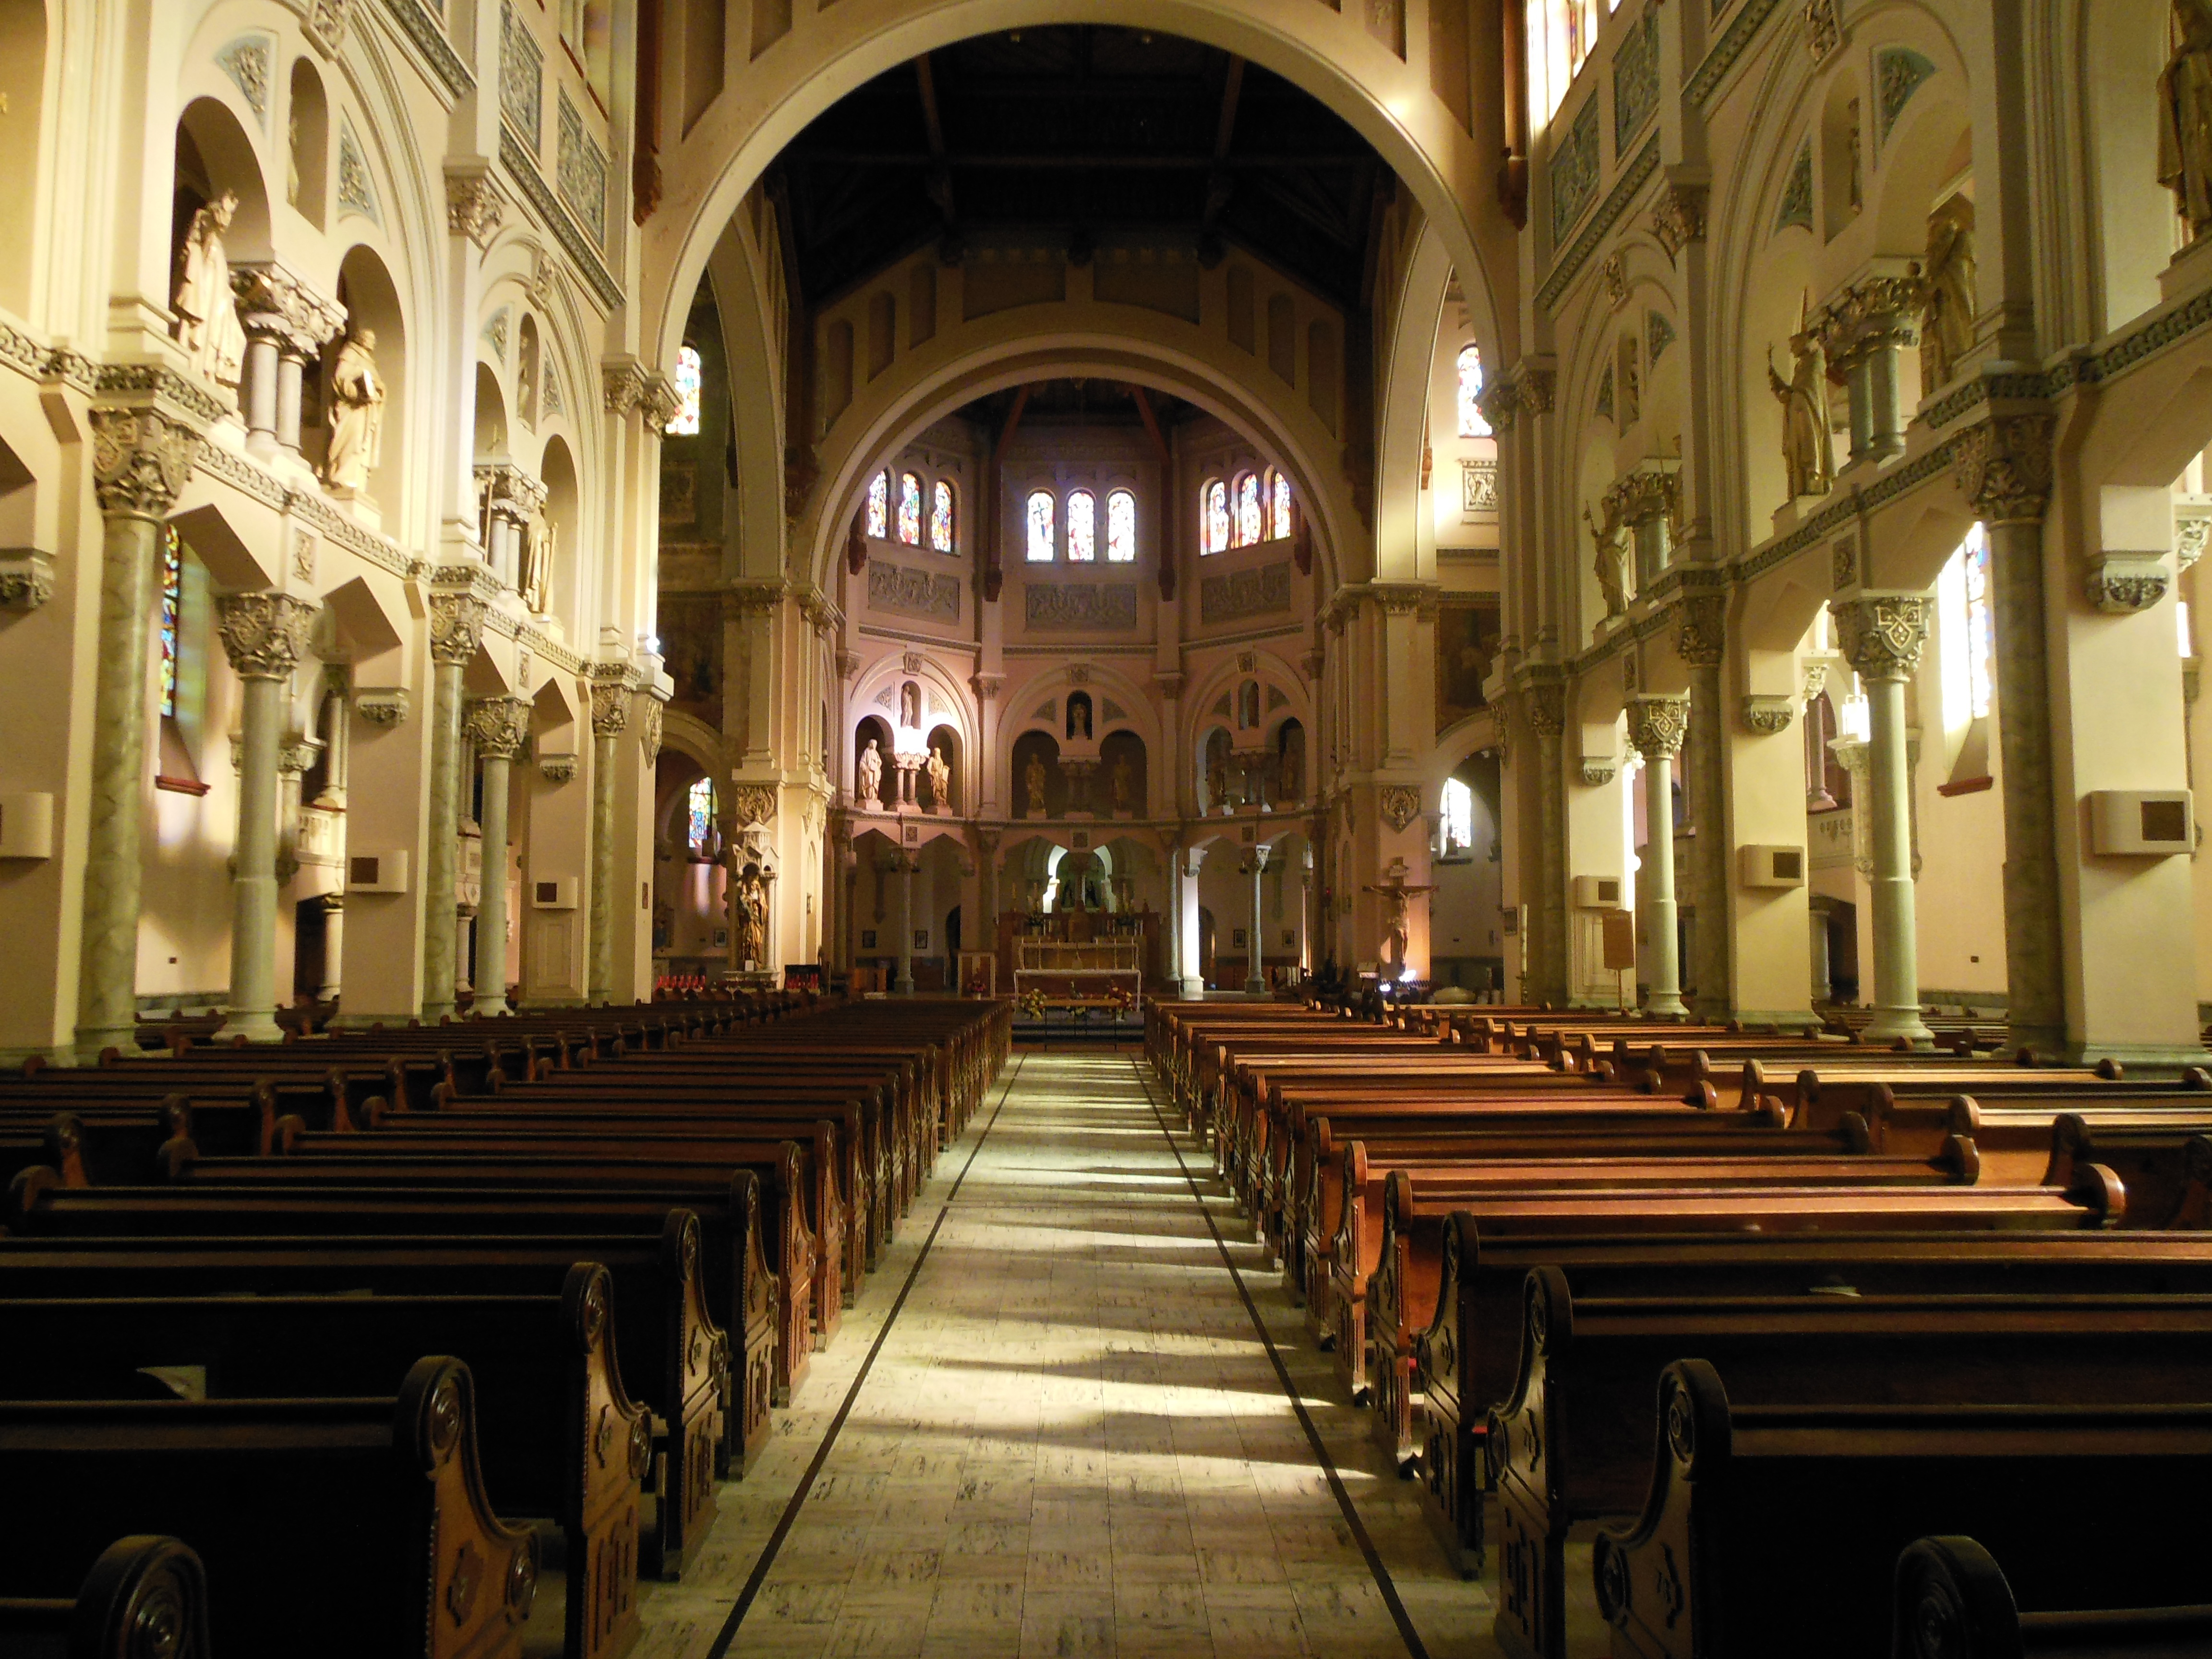 Inside the church | Saint Anne's Parish